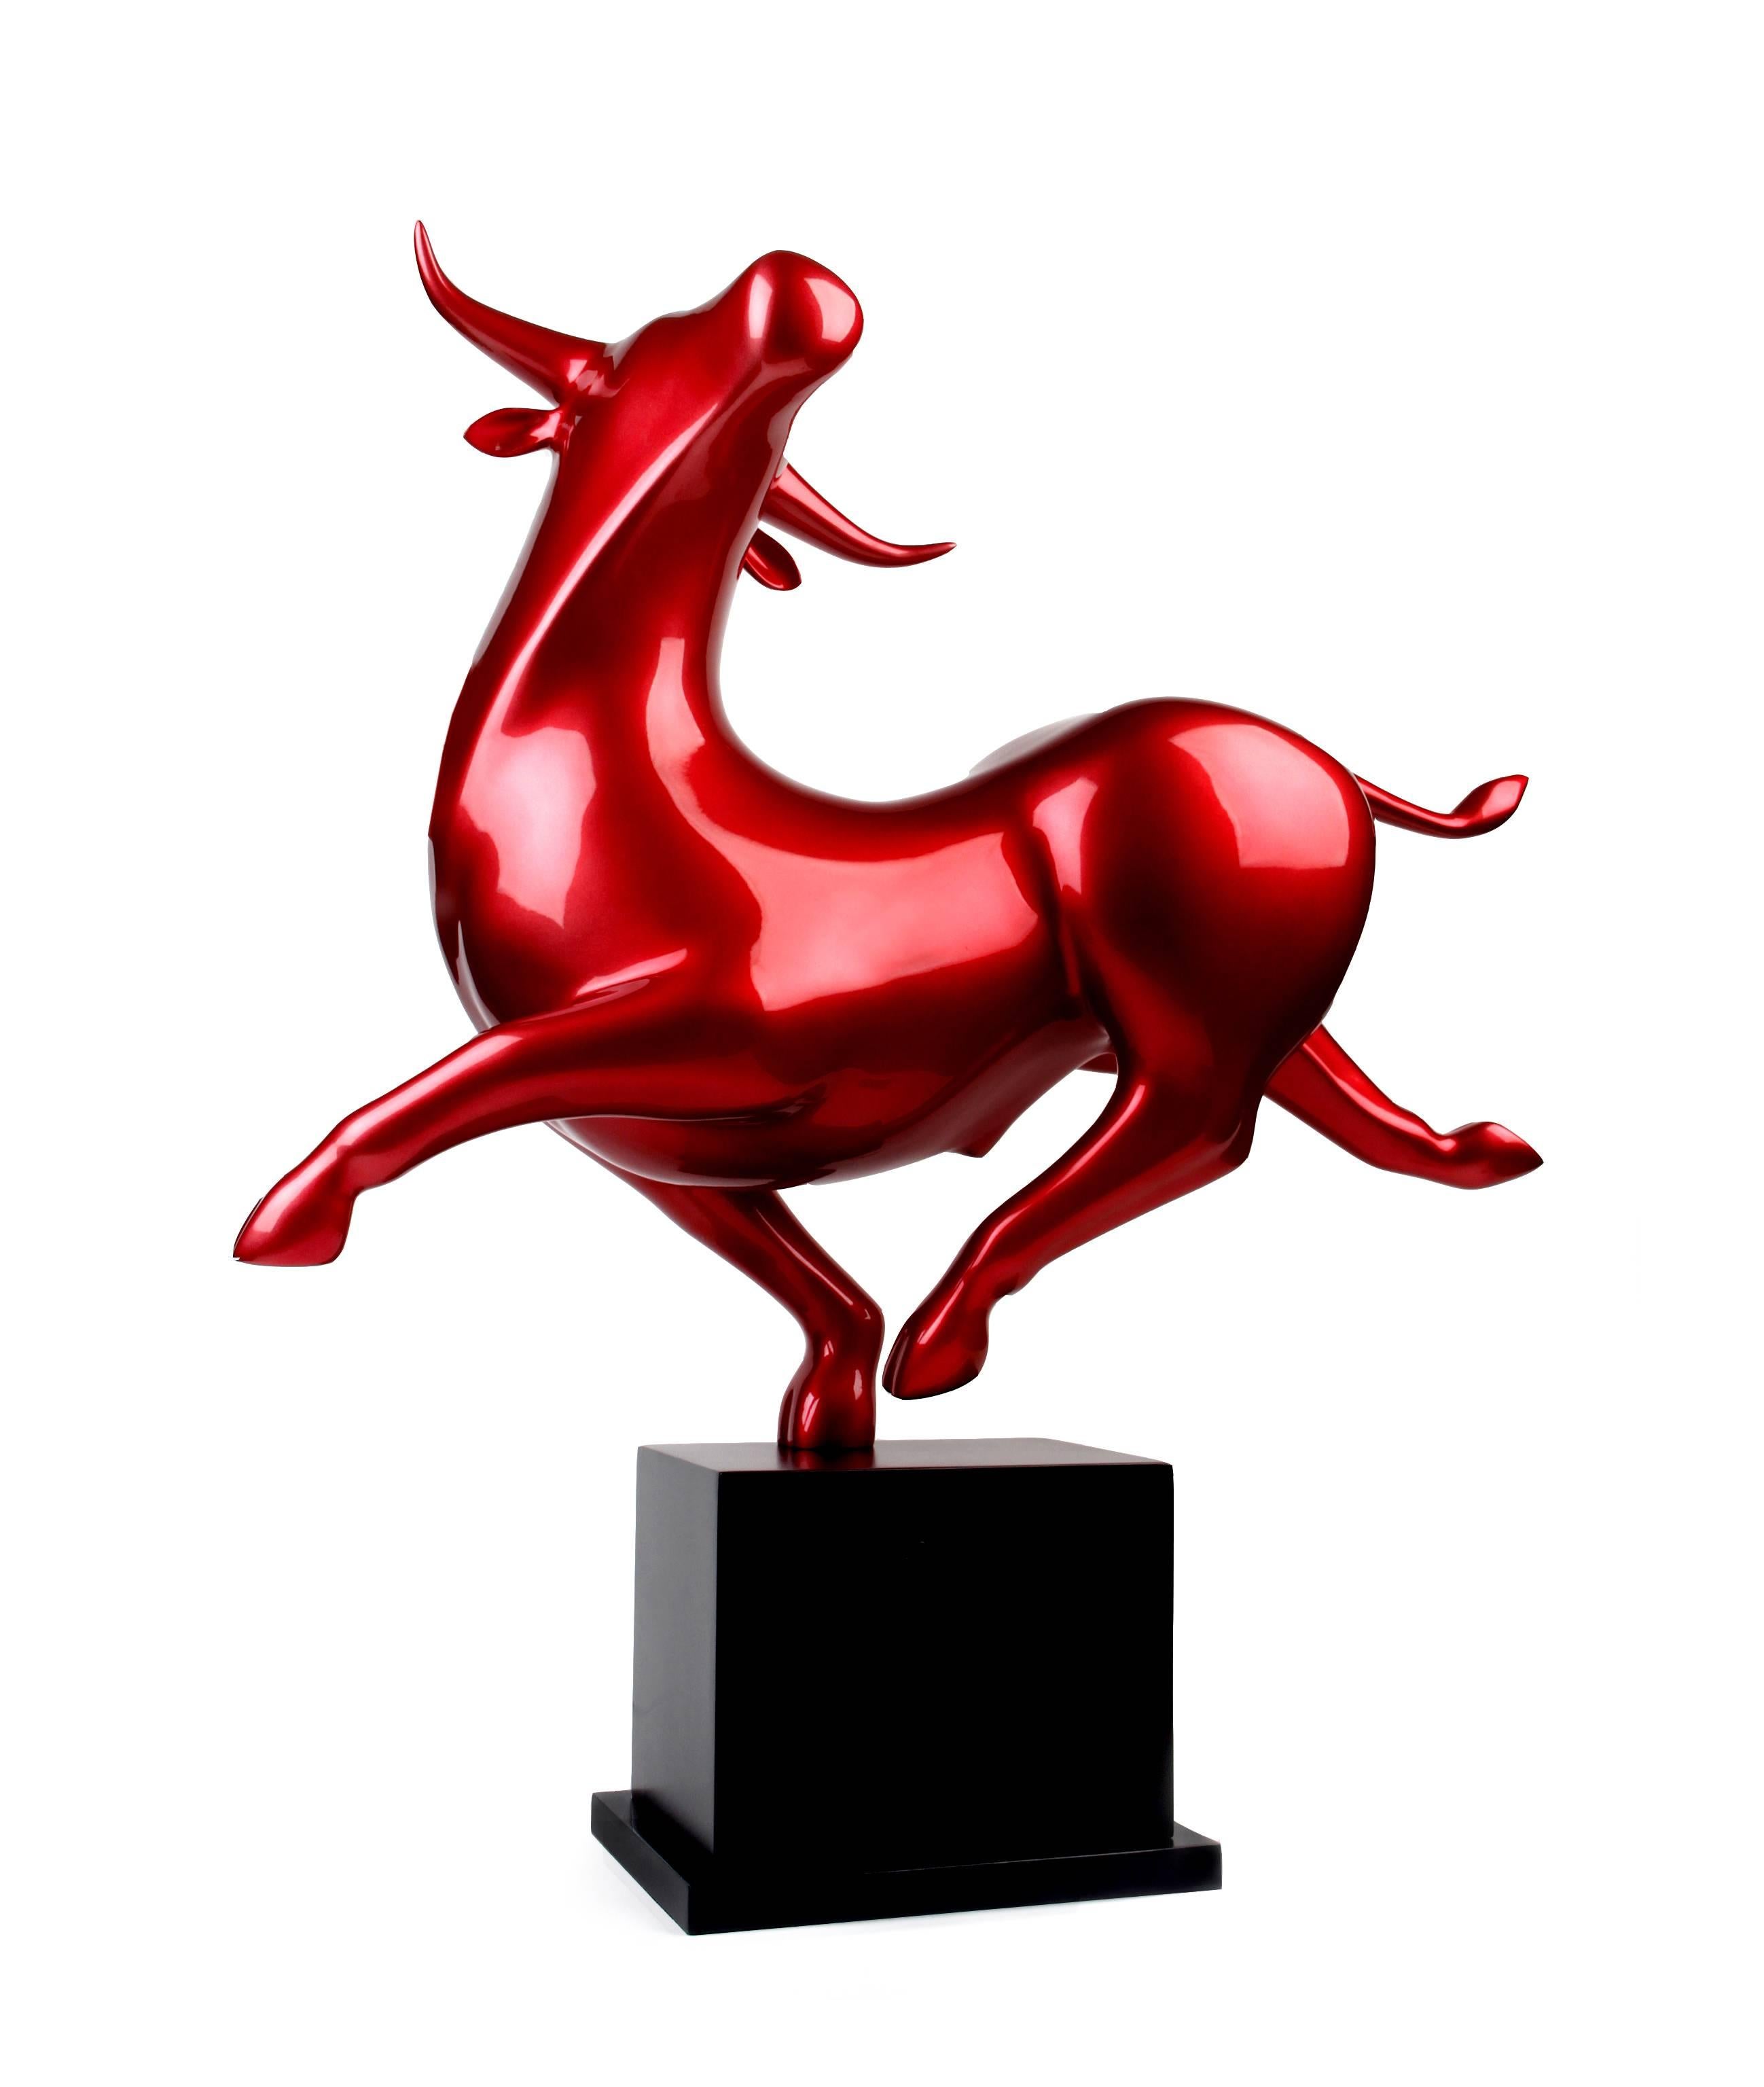 Bernard Rives Abstract Sculpture - Red Bull Original sculpture resin. 